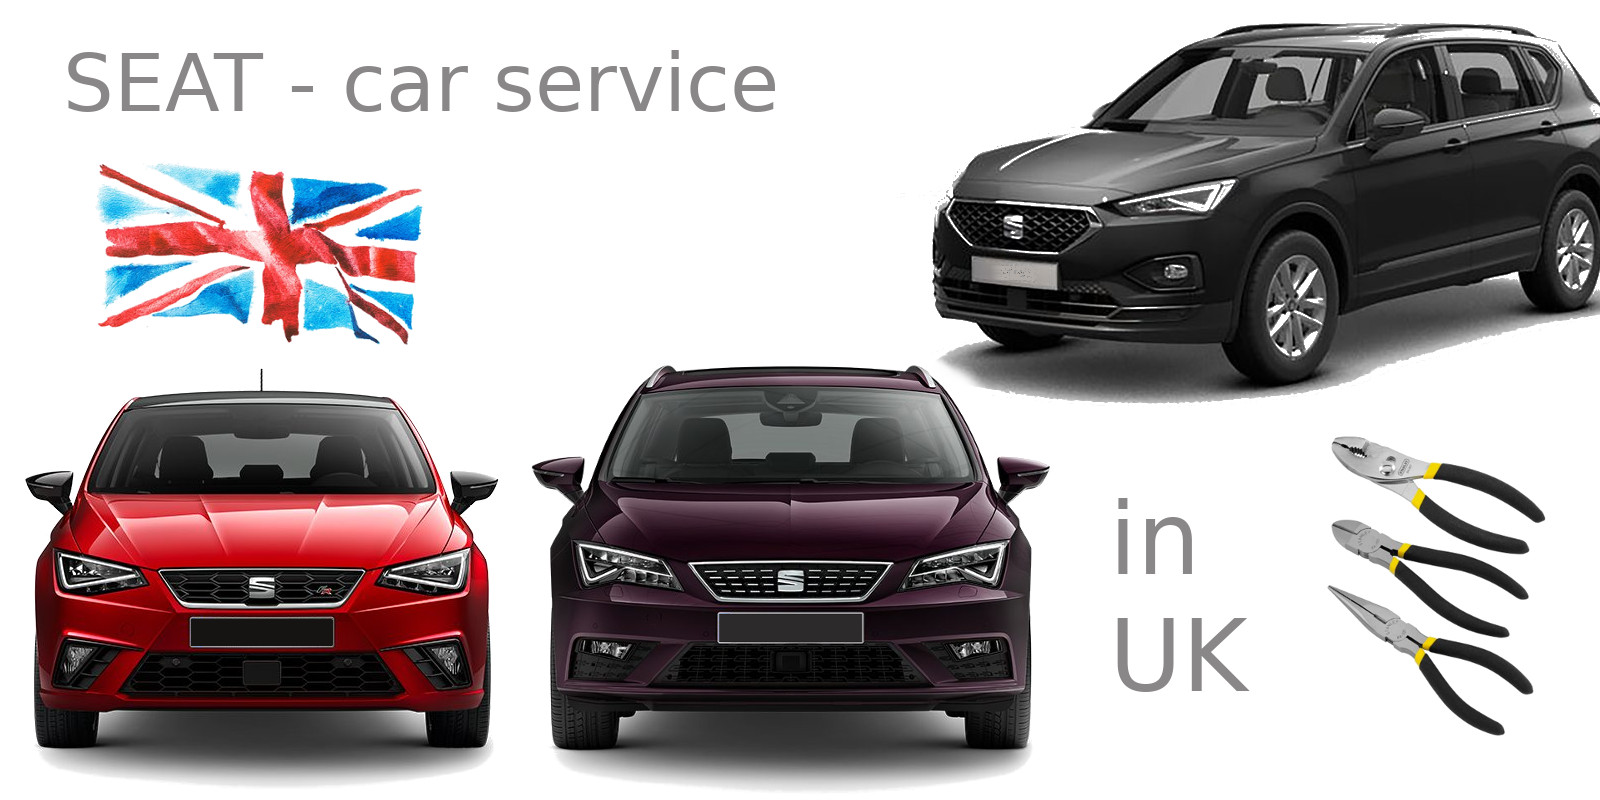 Seat car service in UK